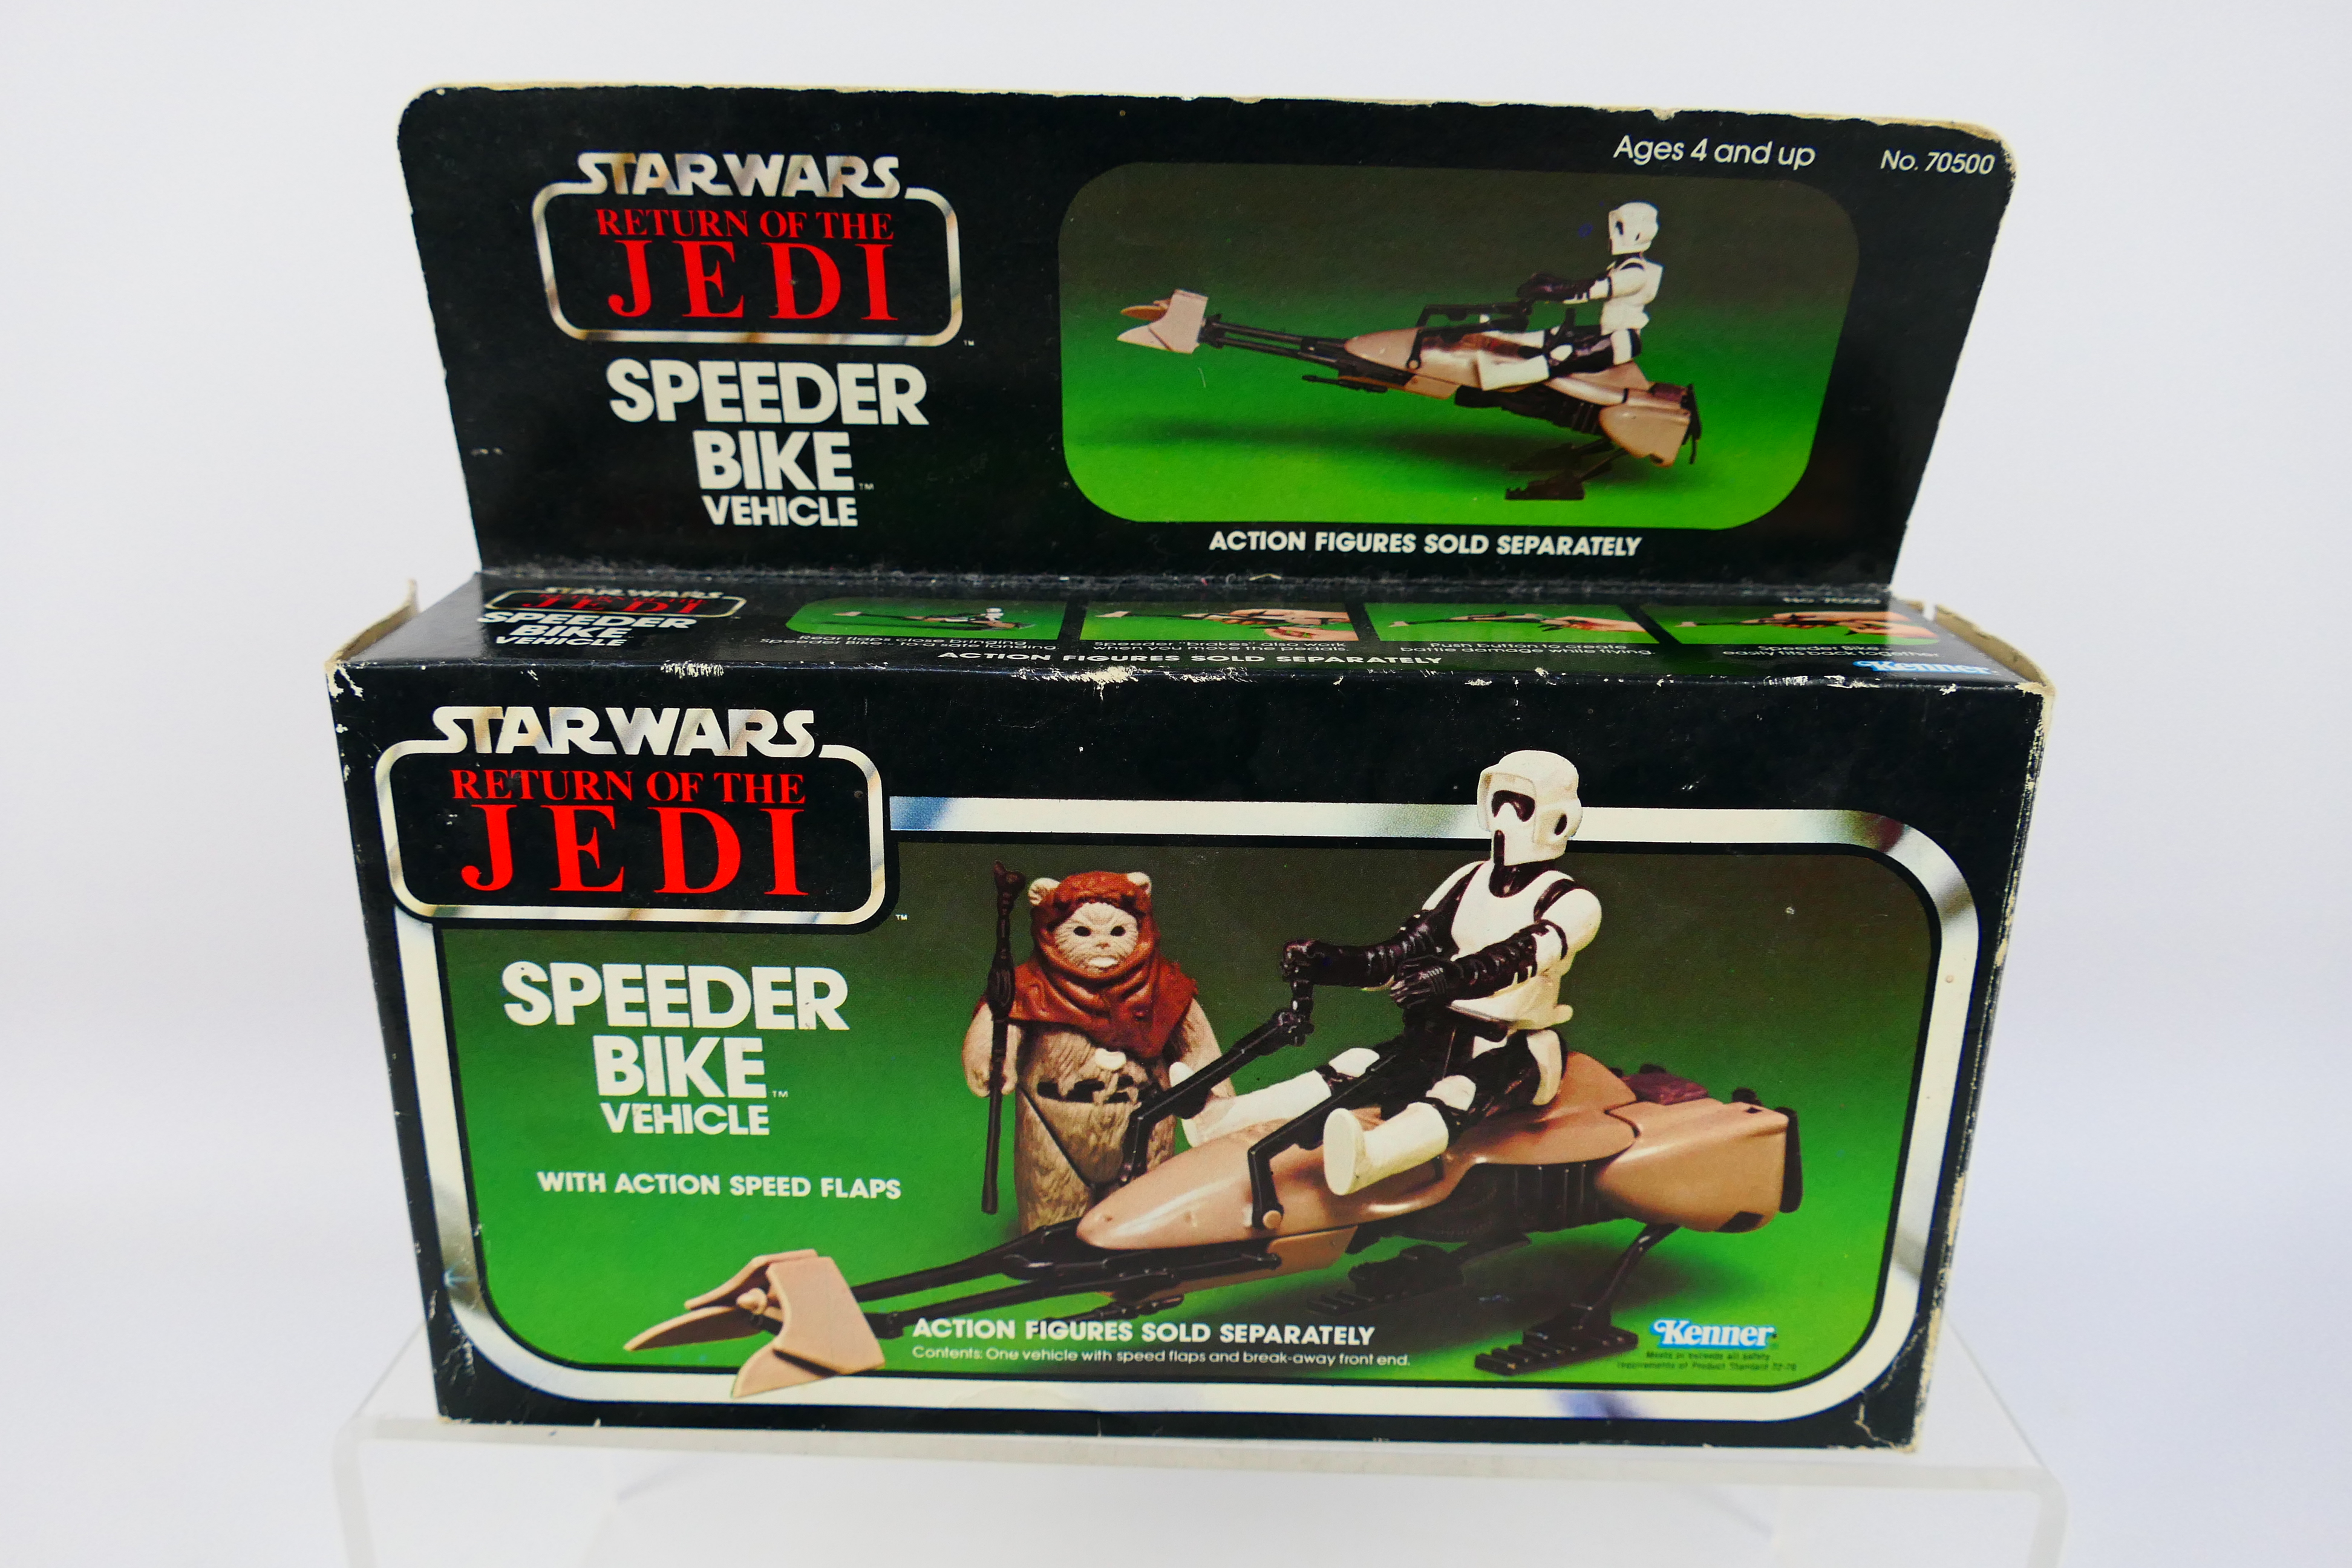 Kenner - Star Wars - A Star Wars Return of the Jedi Speeder Bike Vehicle(70500). - Image 4 of 6